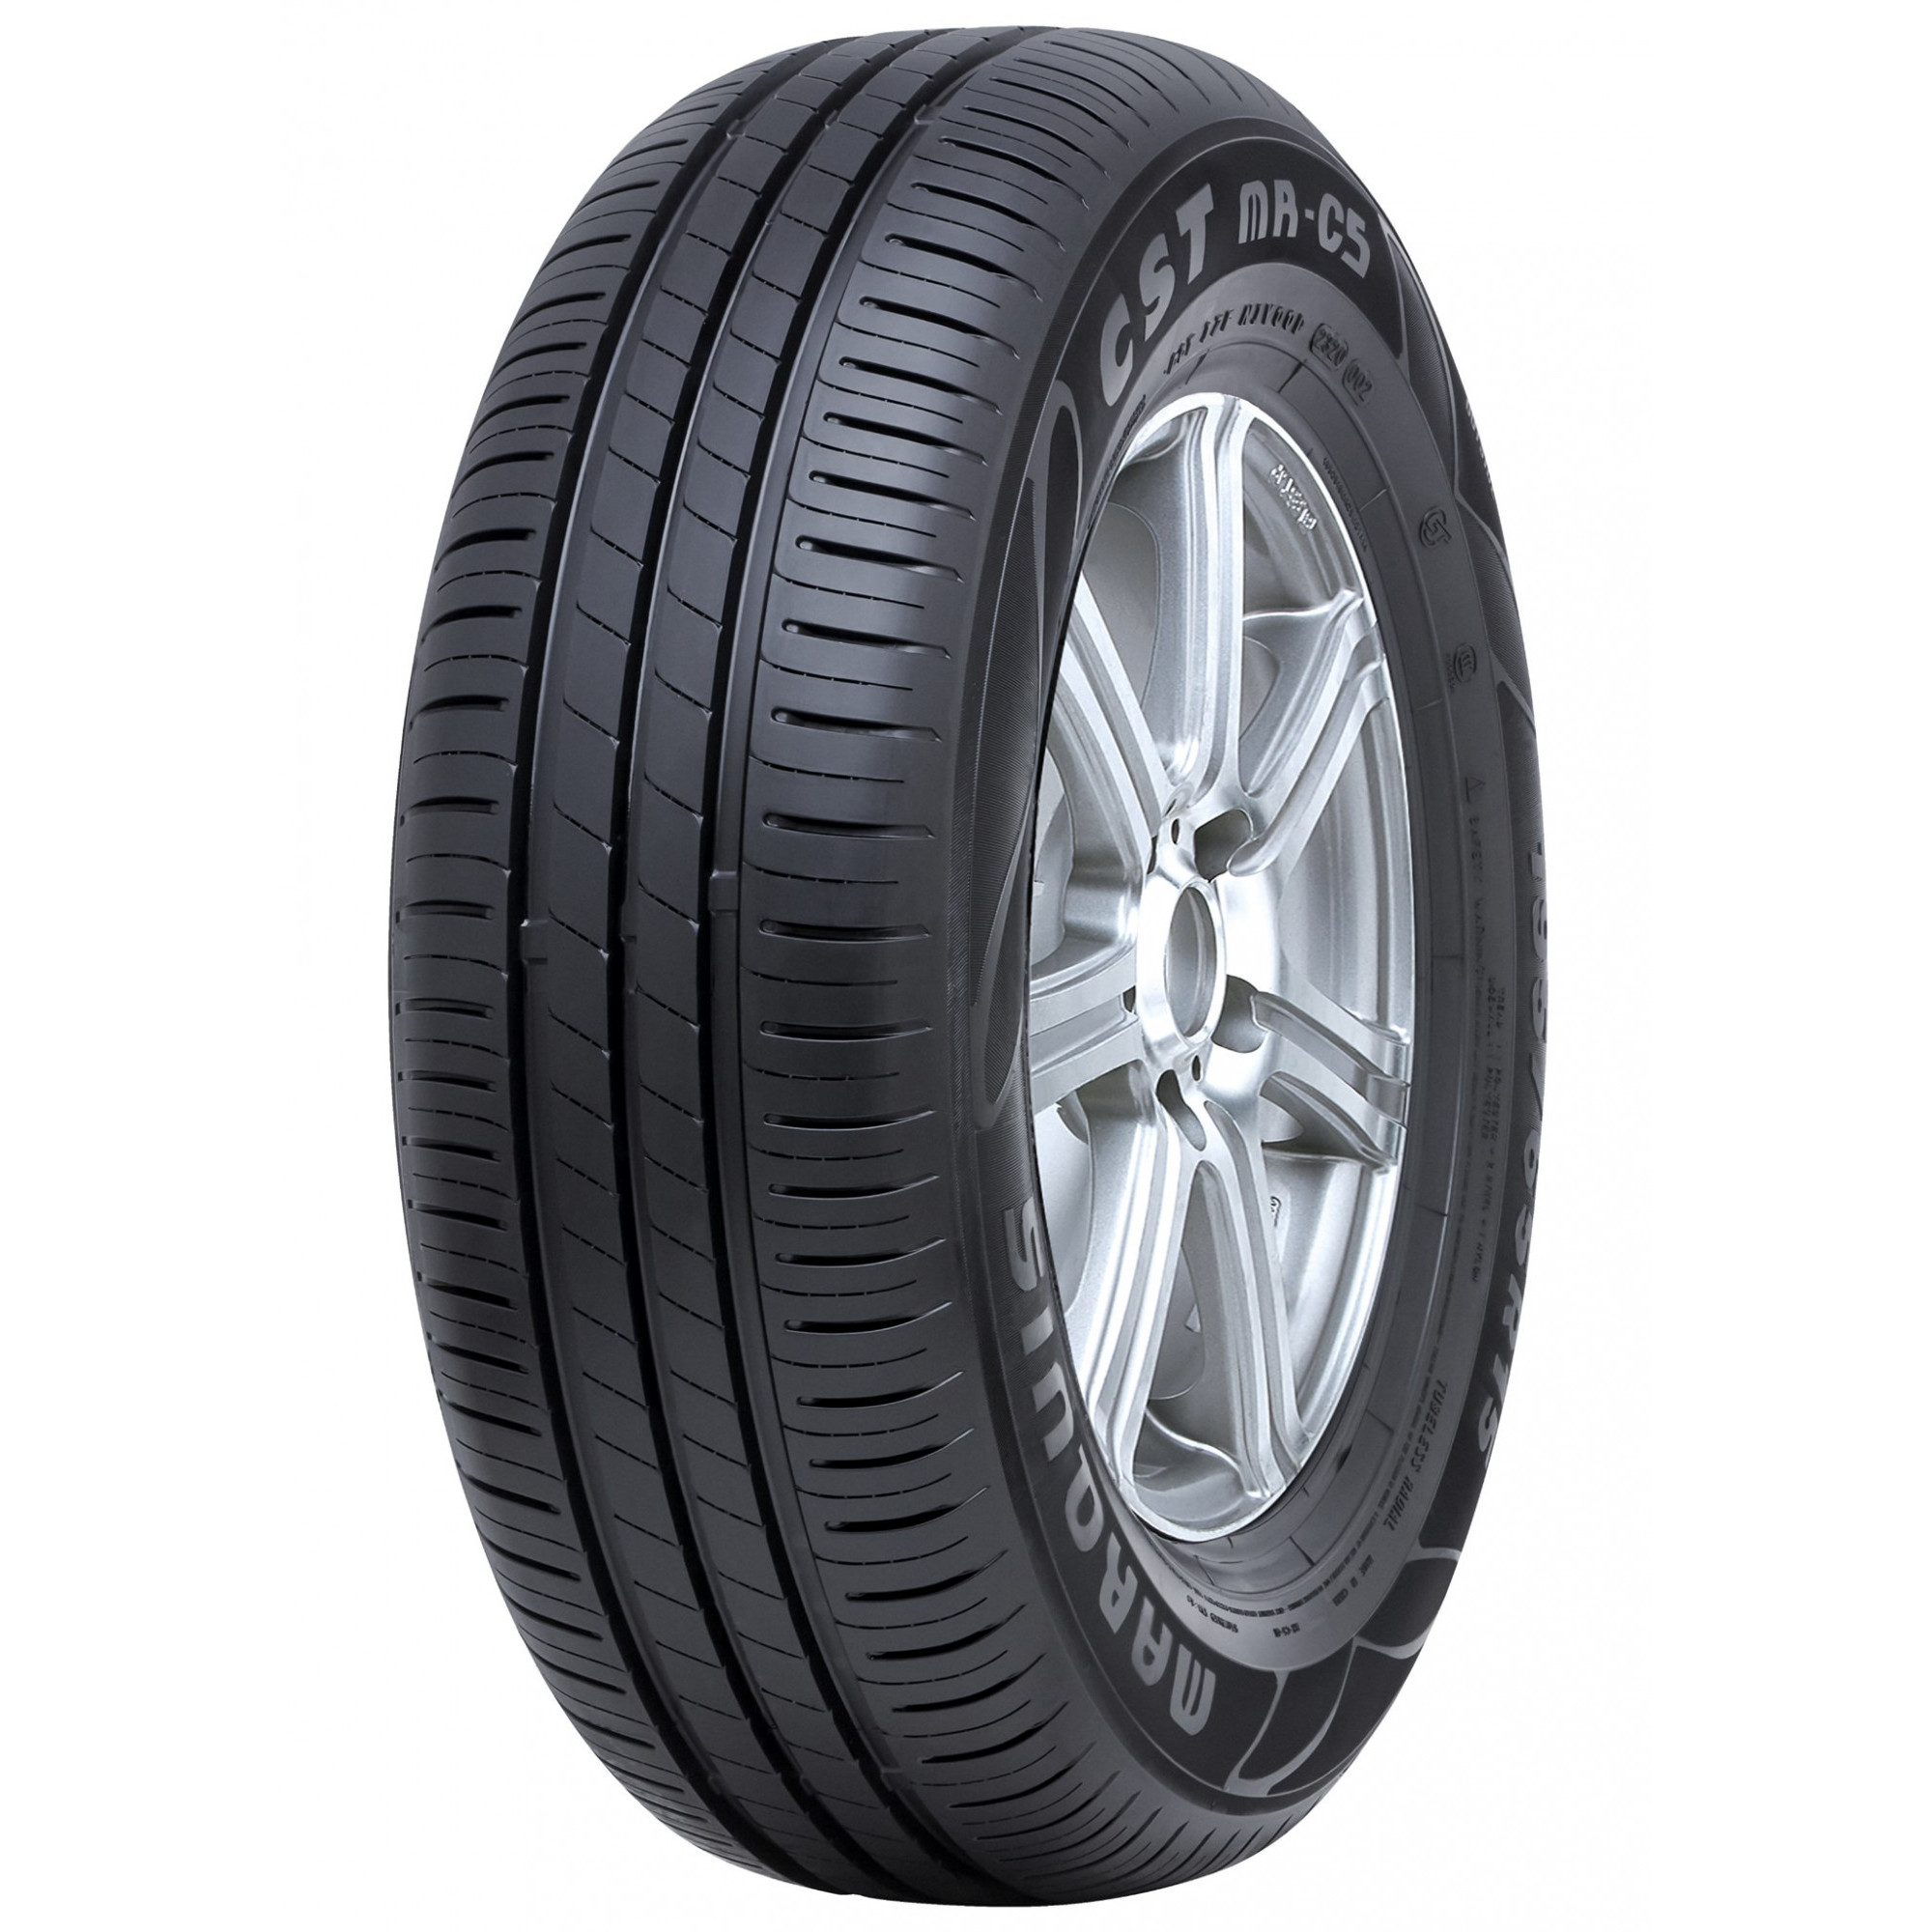 CST tires MARQUIS MR-C5 (185/60R14 82H) - зображення 1